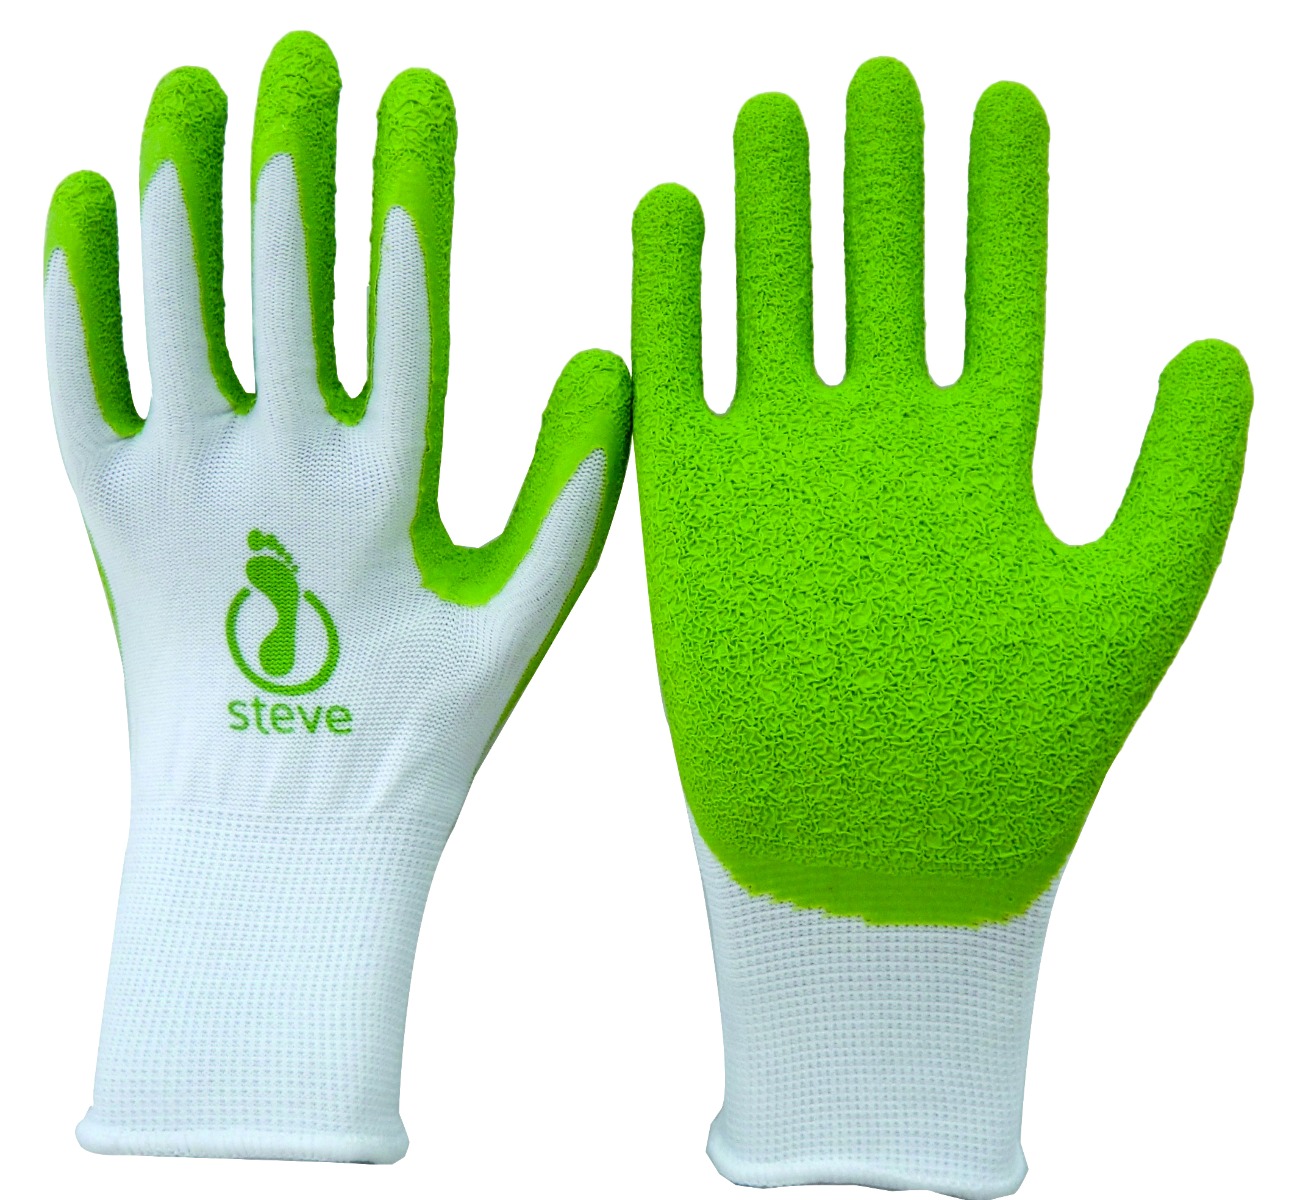 Steve+ Hosiery Application Gloves